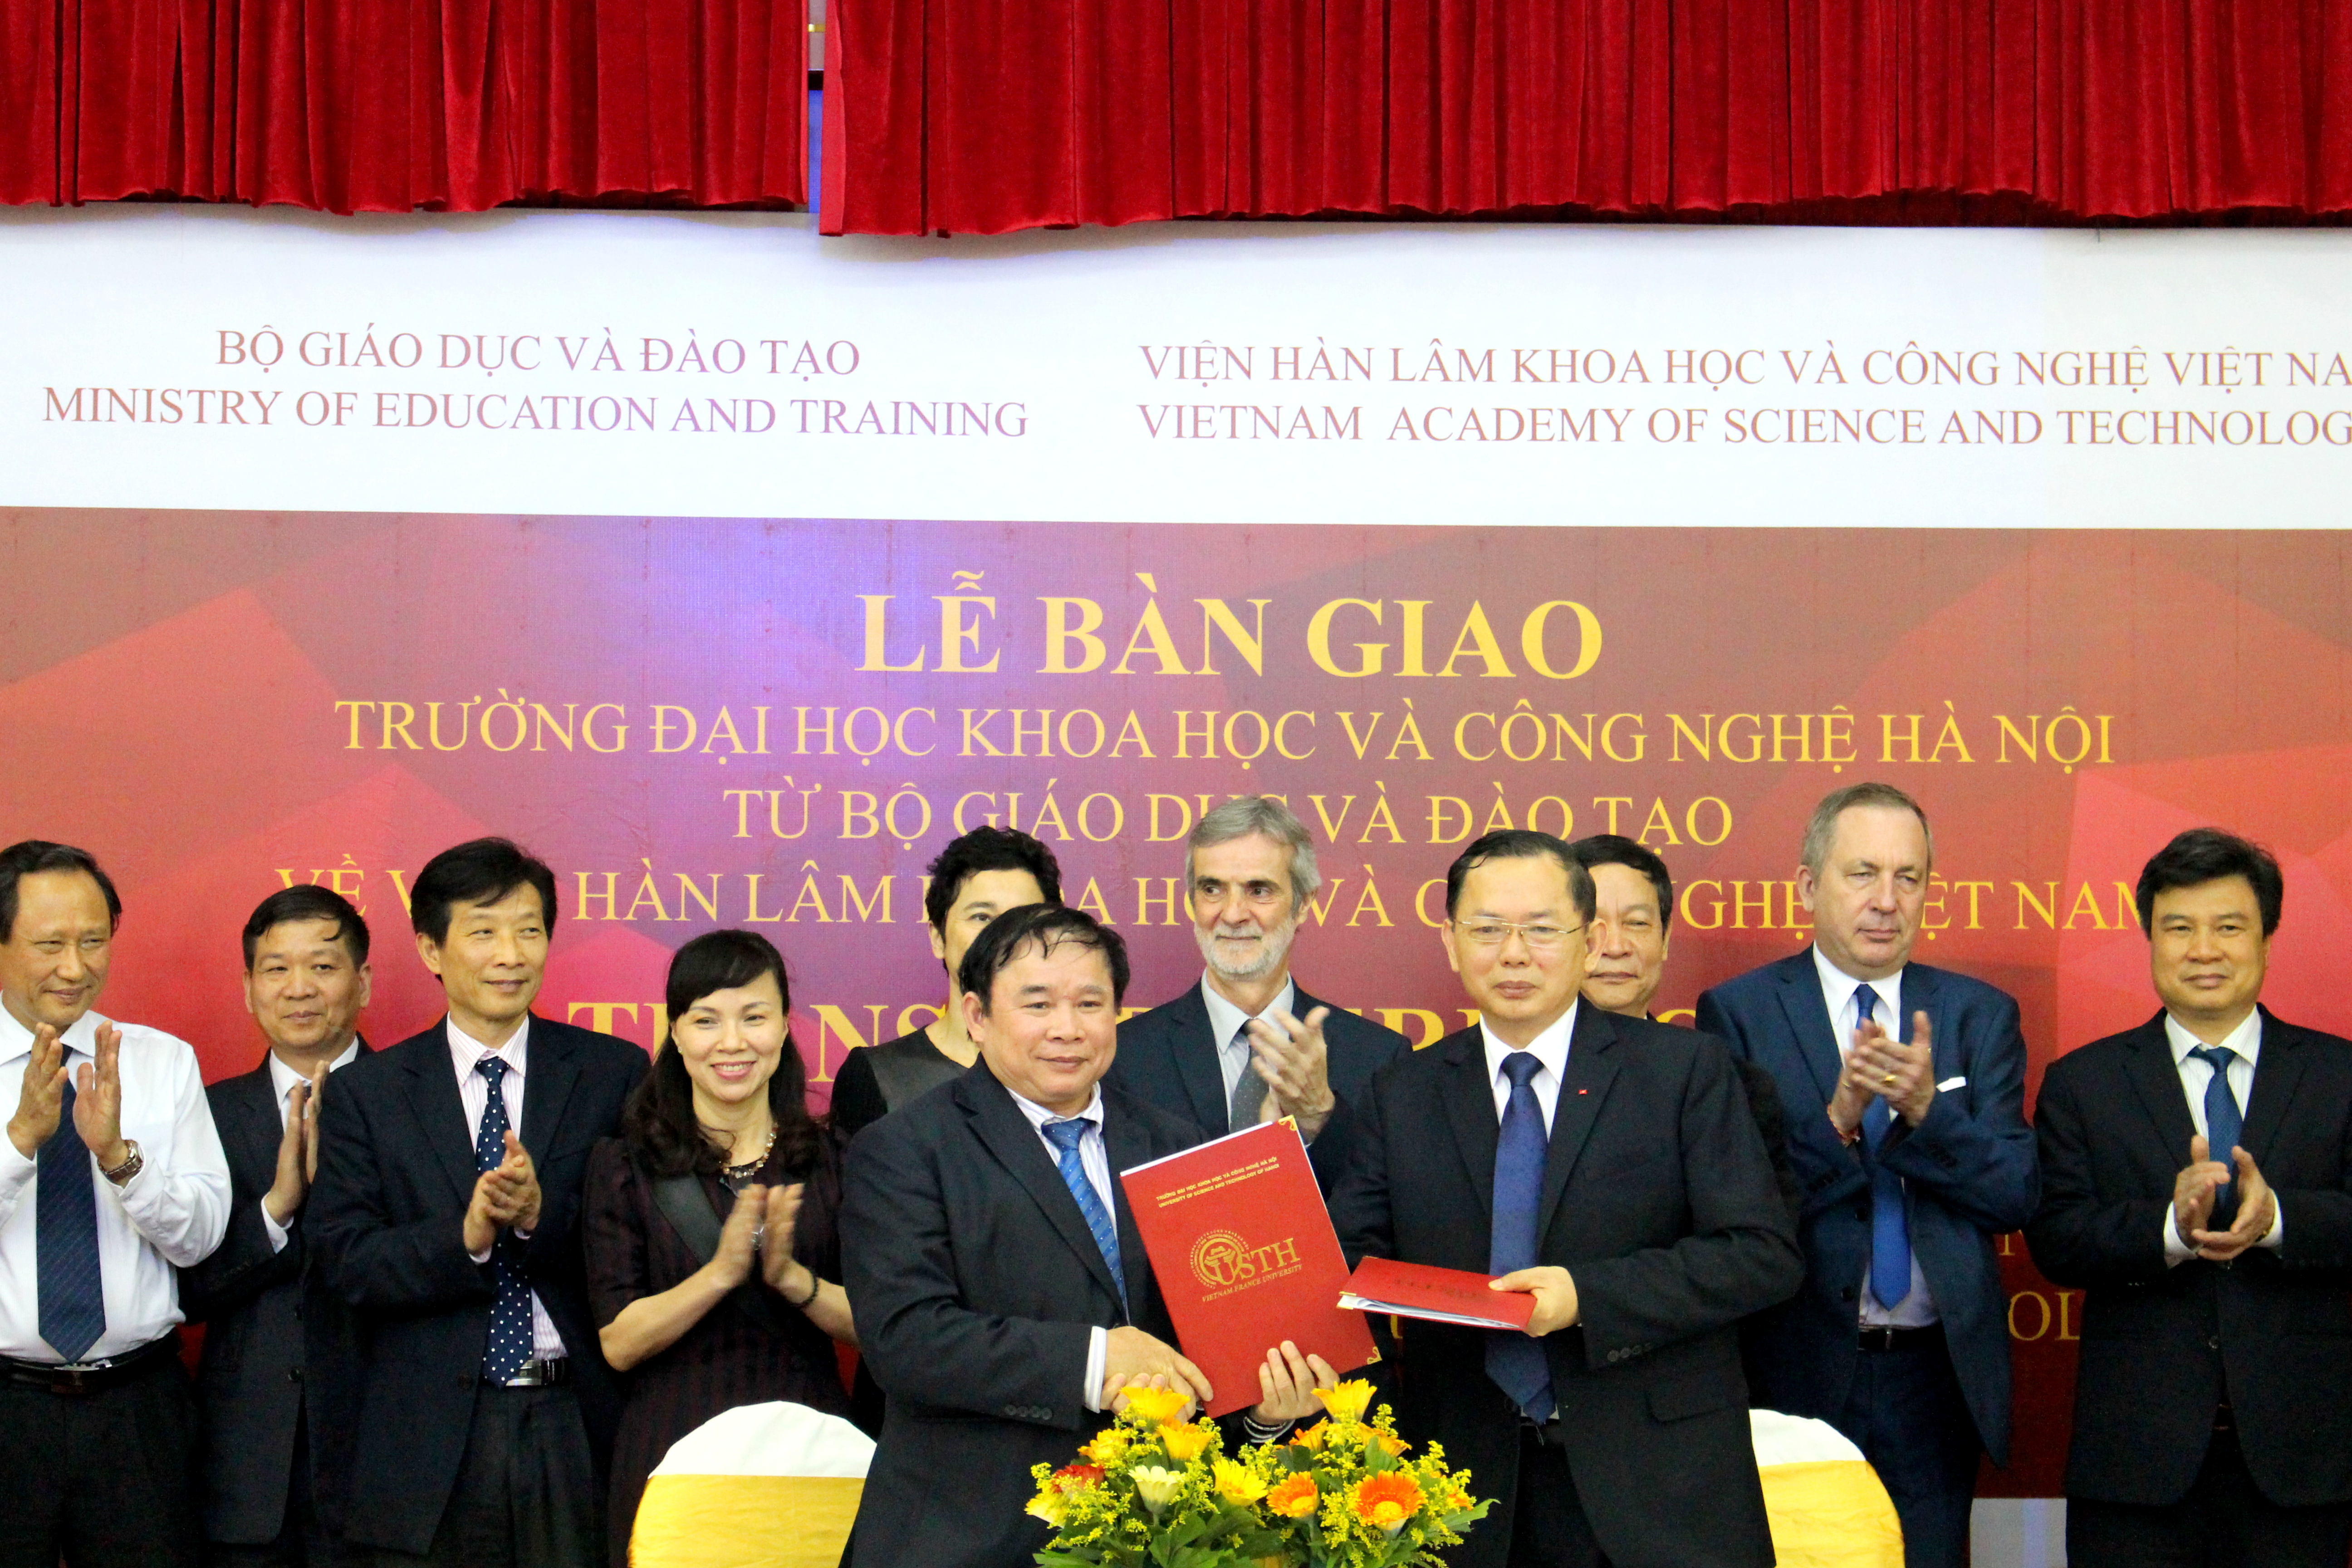 Trường Lễ ký kết bàn giao chủ quản của trường Đại học Khoa học và Công nghệ Hà Nội.